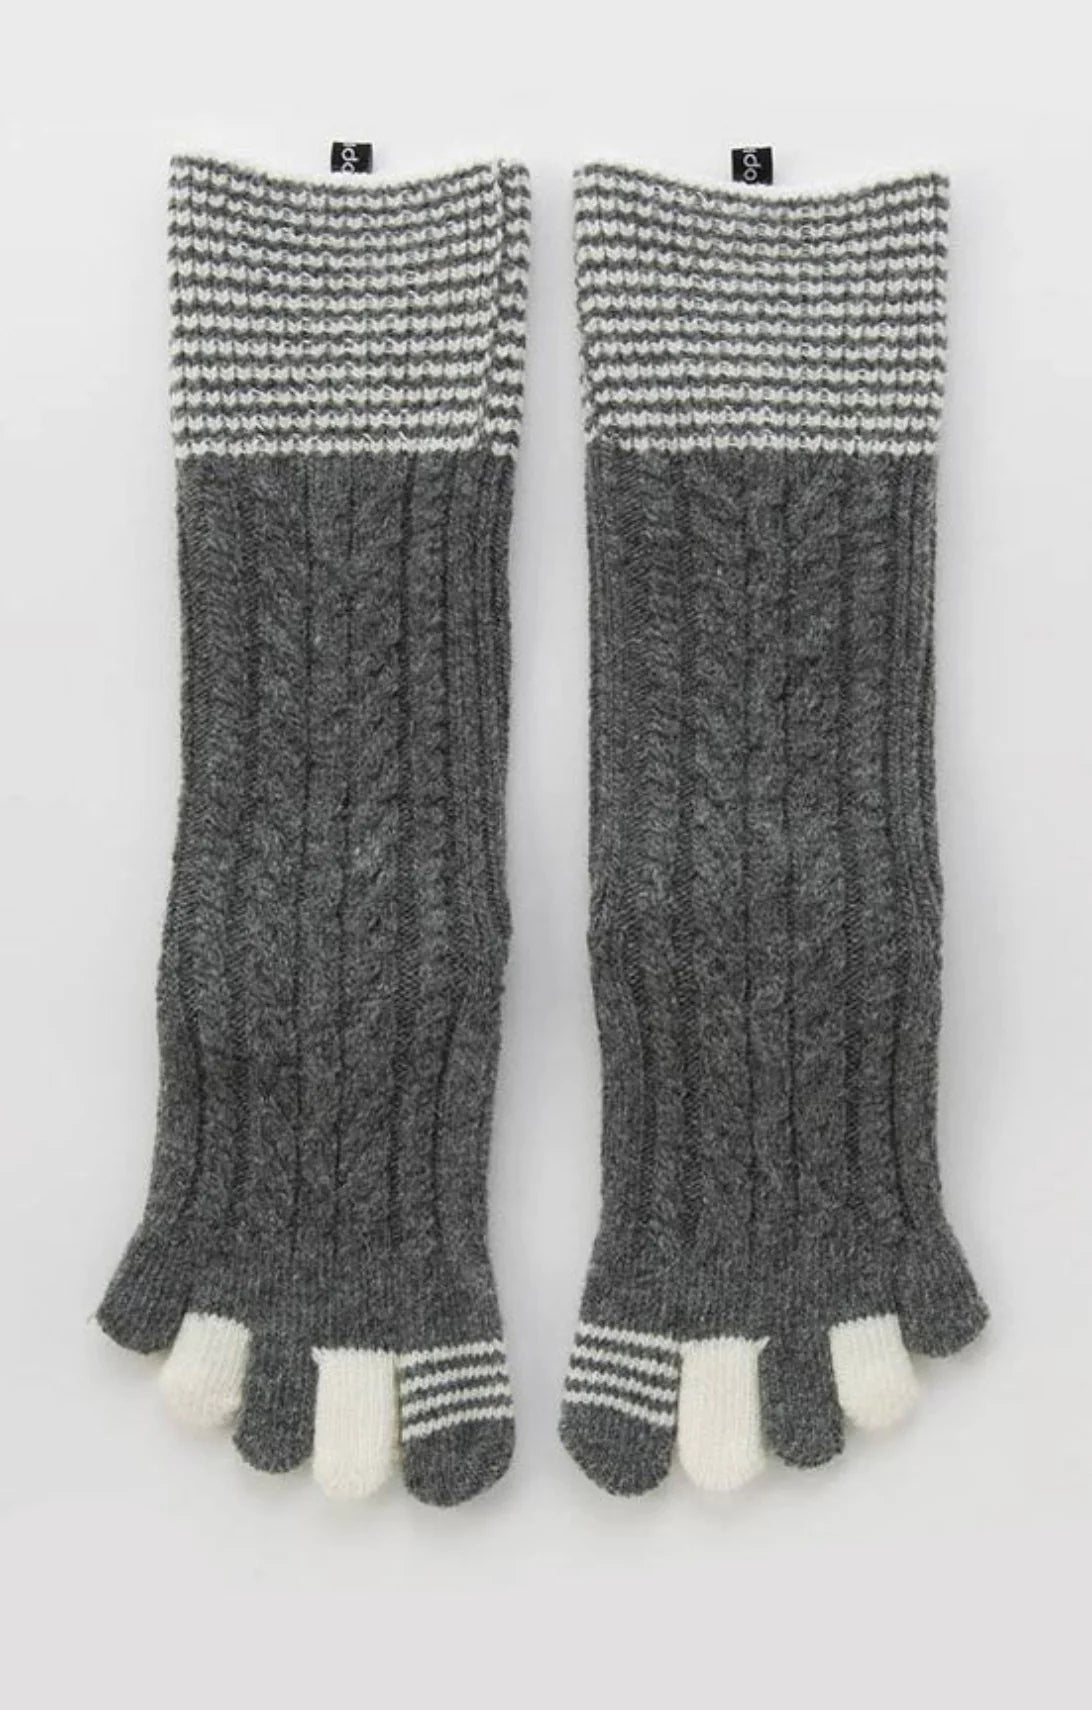 KNITIDO Naturals Silkroad  Silk Sneaker Toe Socks, Beige (007